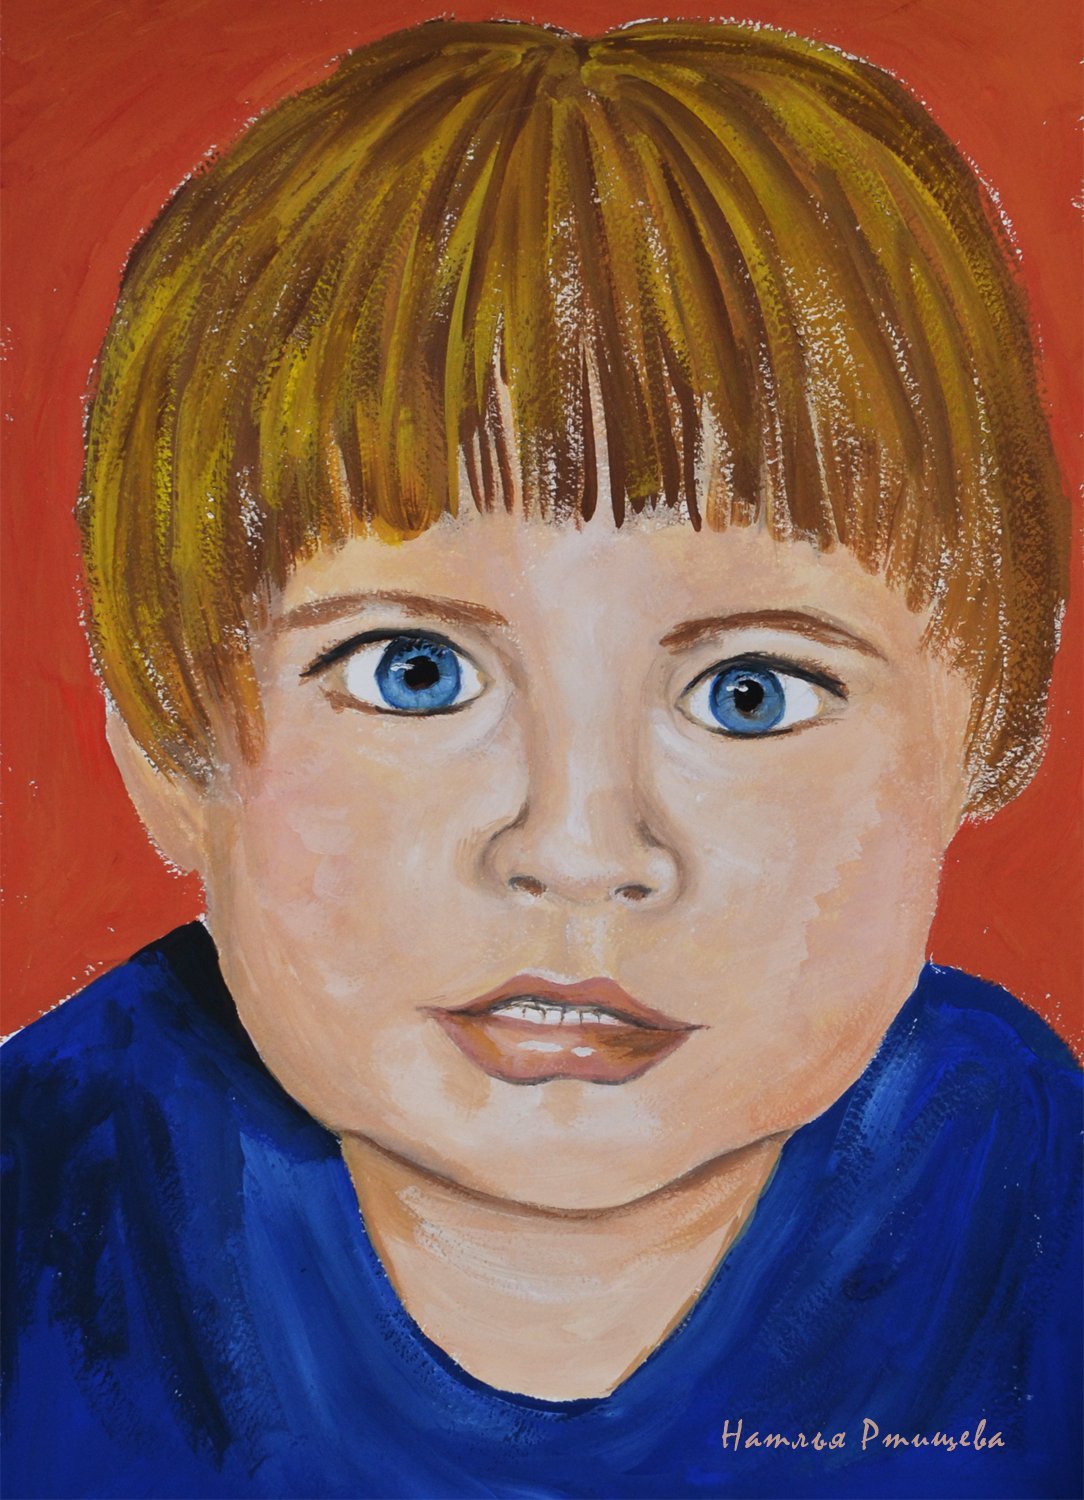 Рисуем портрет человека красками урок 3 класс. Портрет гуашью для детей. Портрет мальчика красками. Портрет человека в цвете. Портрет друга.